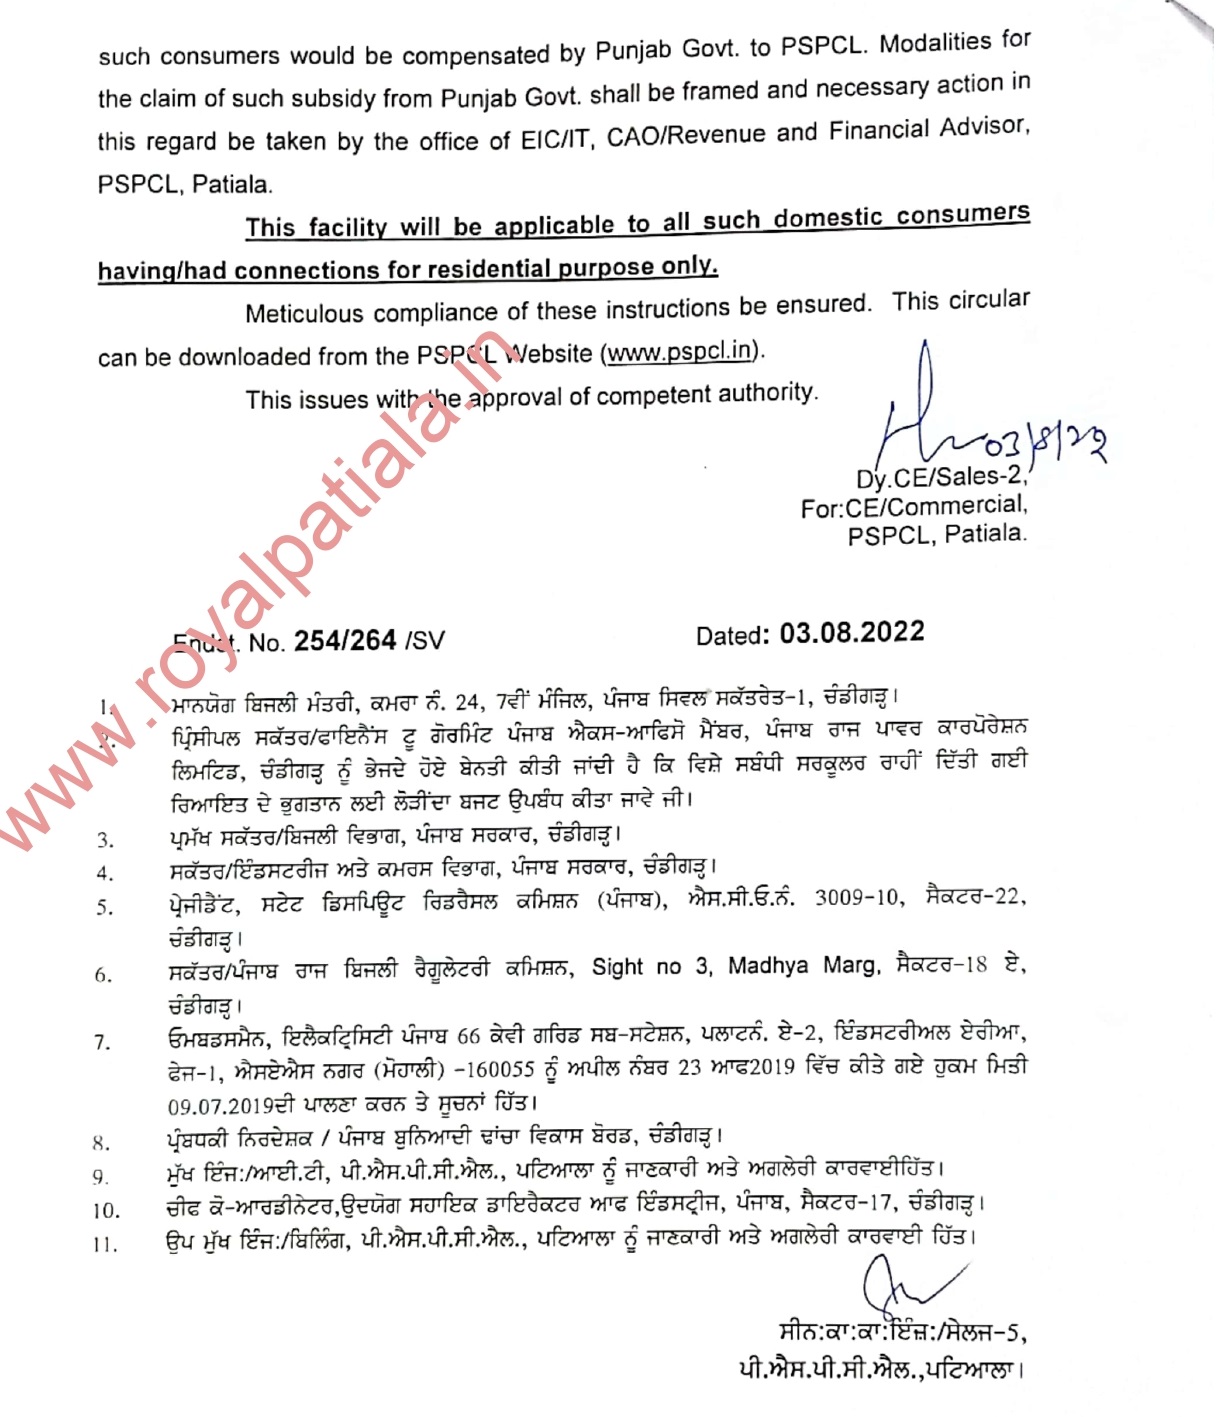 PSPCL issues order regarding waiving off pending arrears 